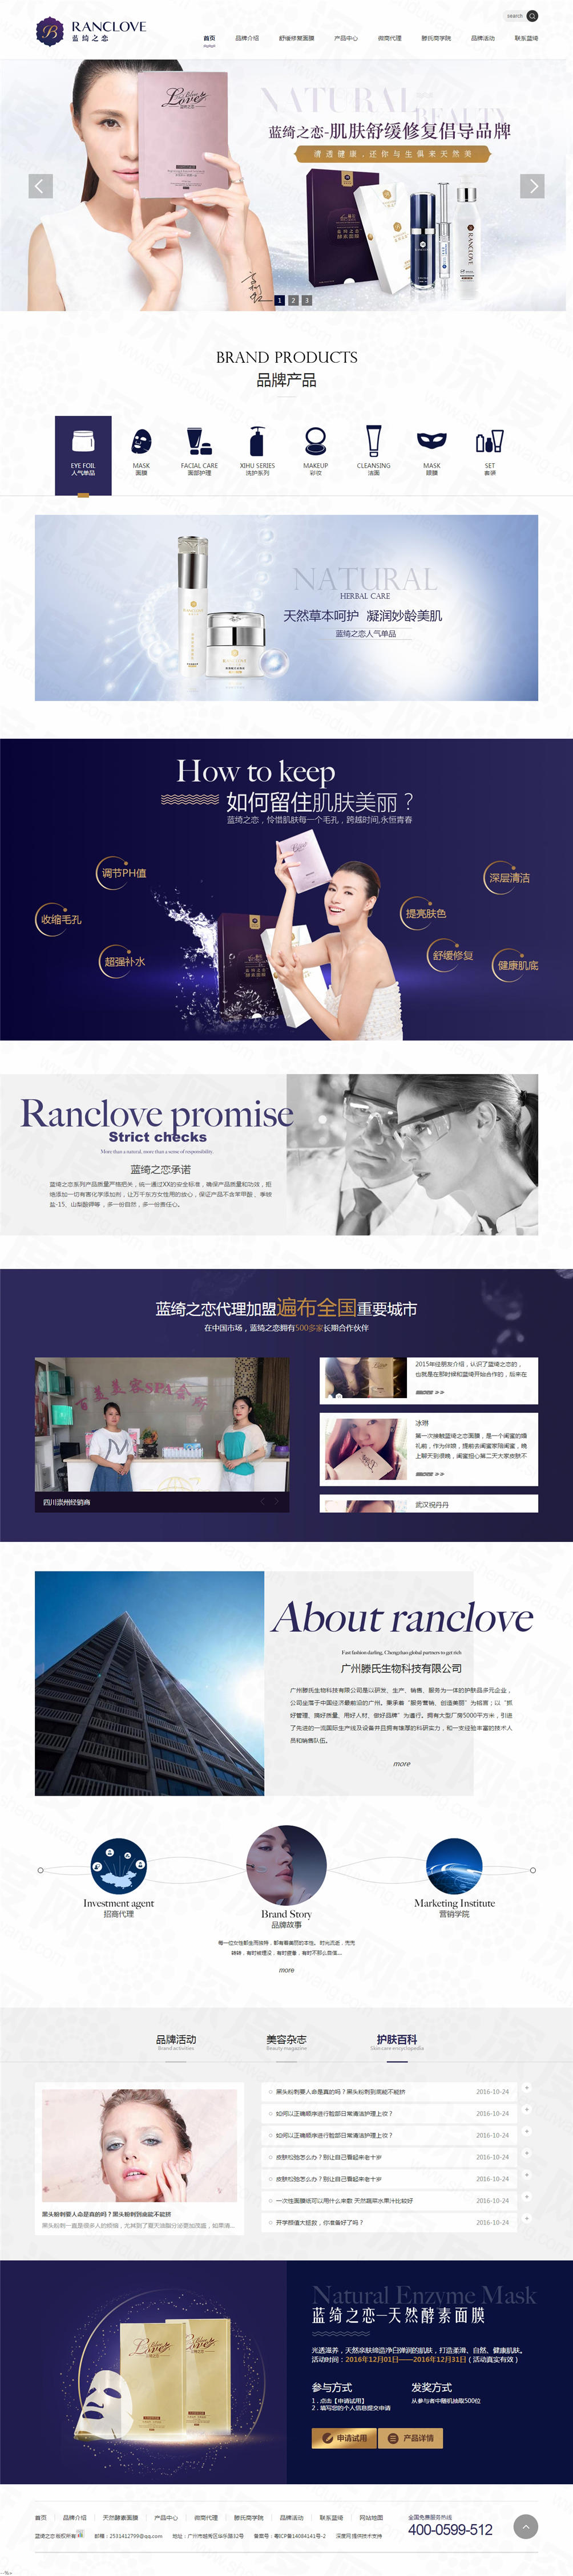 广州蓝绮之恋面膜营销型网站建设案例